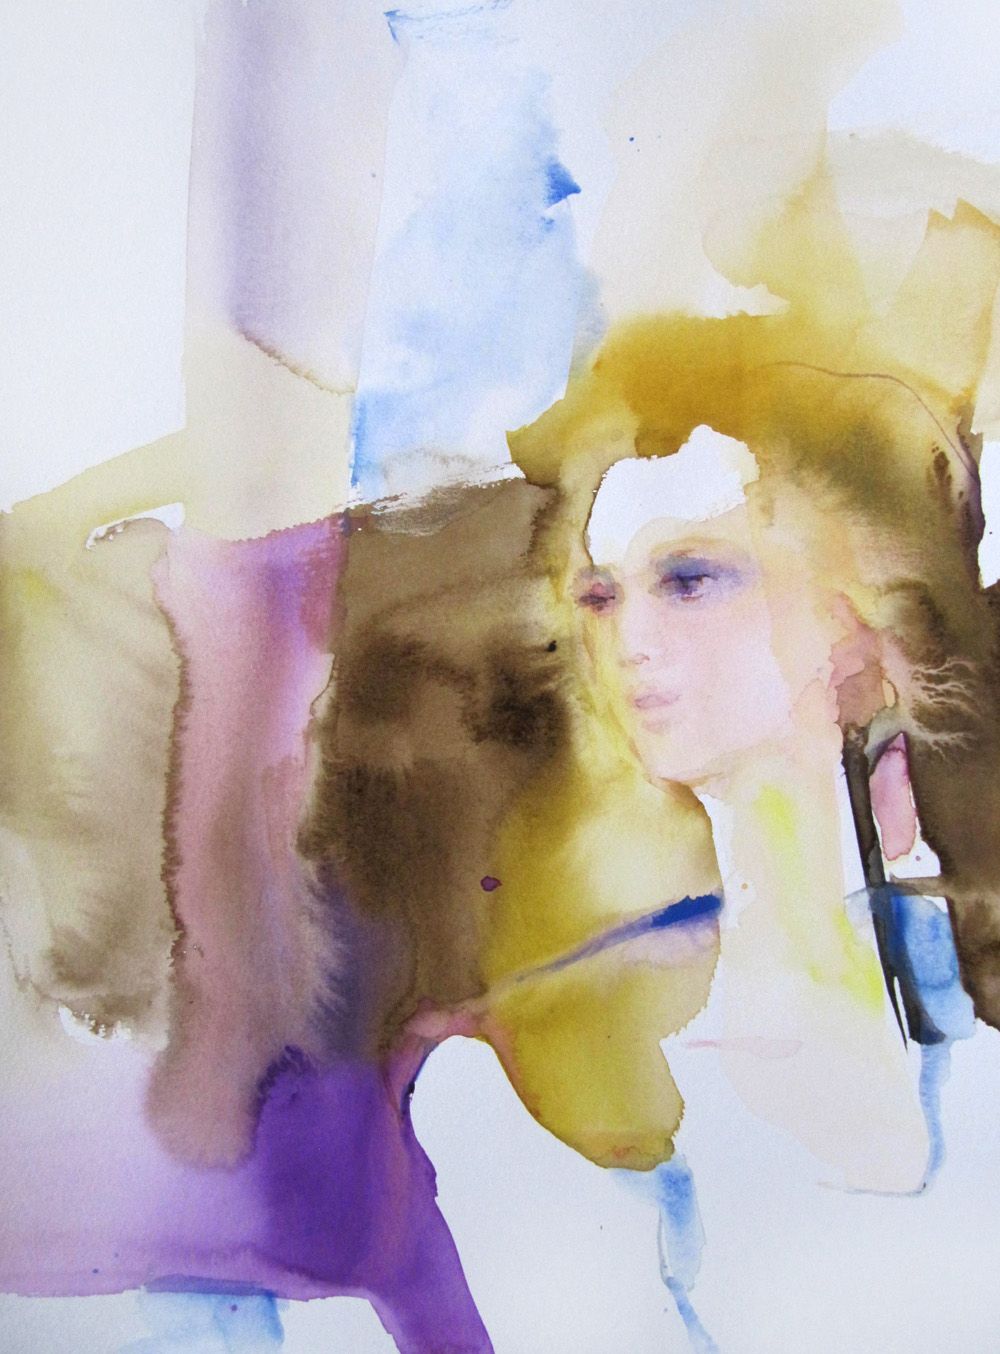 Sylvia Baldeva's "Brise matinale" farbenfrohes Gemälde einer Frau, inspiriert, Leichtigkeit, Seins zustand, Expressionismus, Aquarell auf Canson®-Papier 